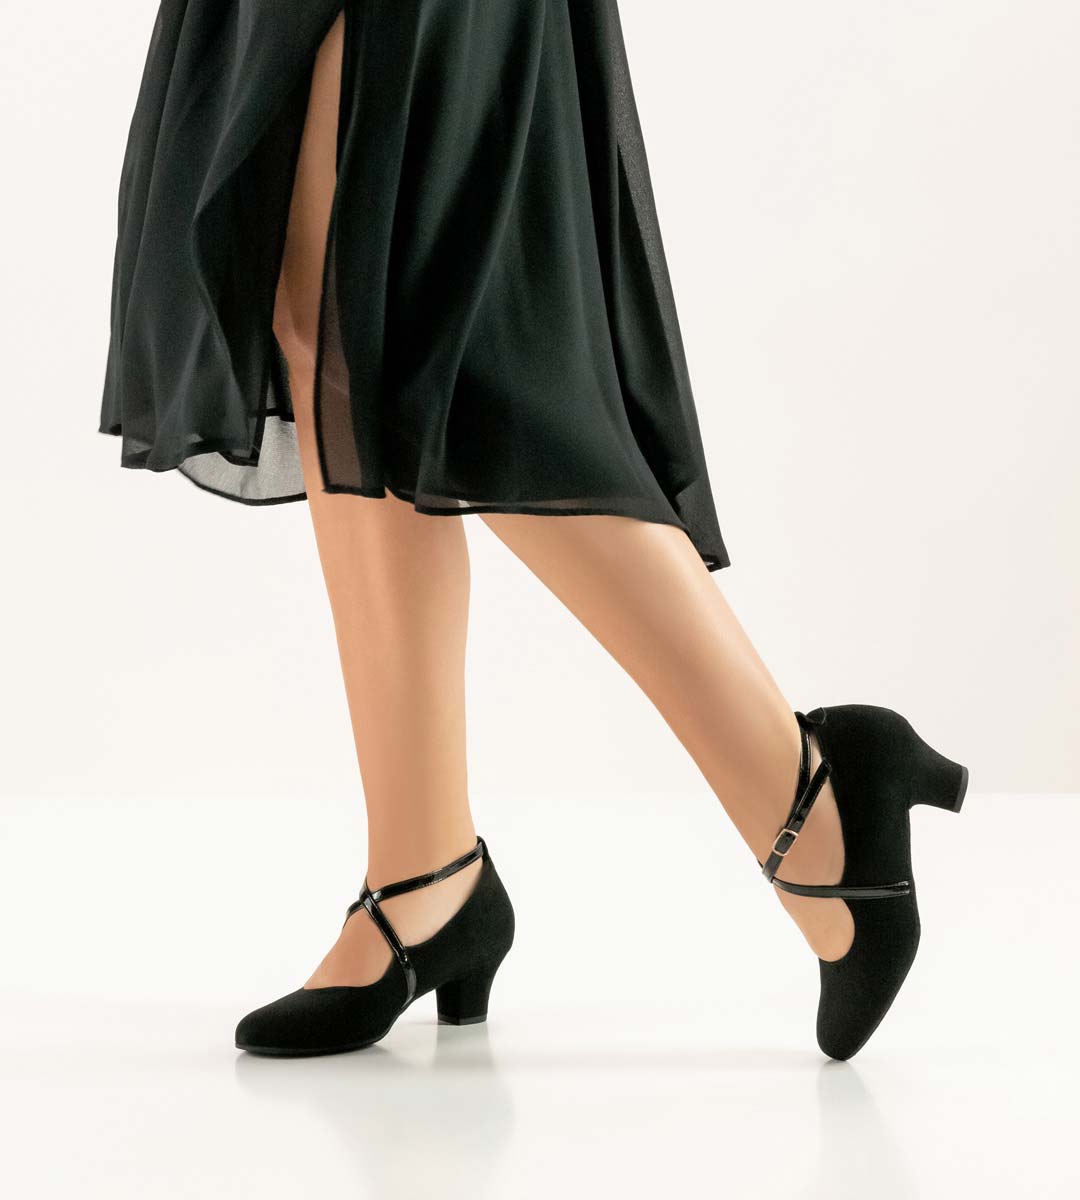 Chaussures de danse fermées Werner Kern avec bride de cou-de-pied noire